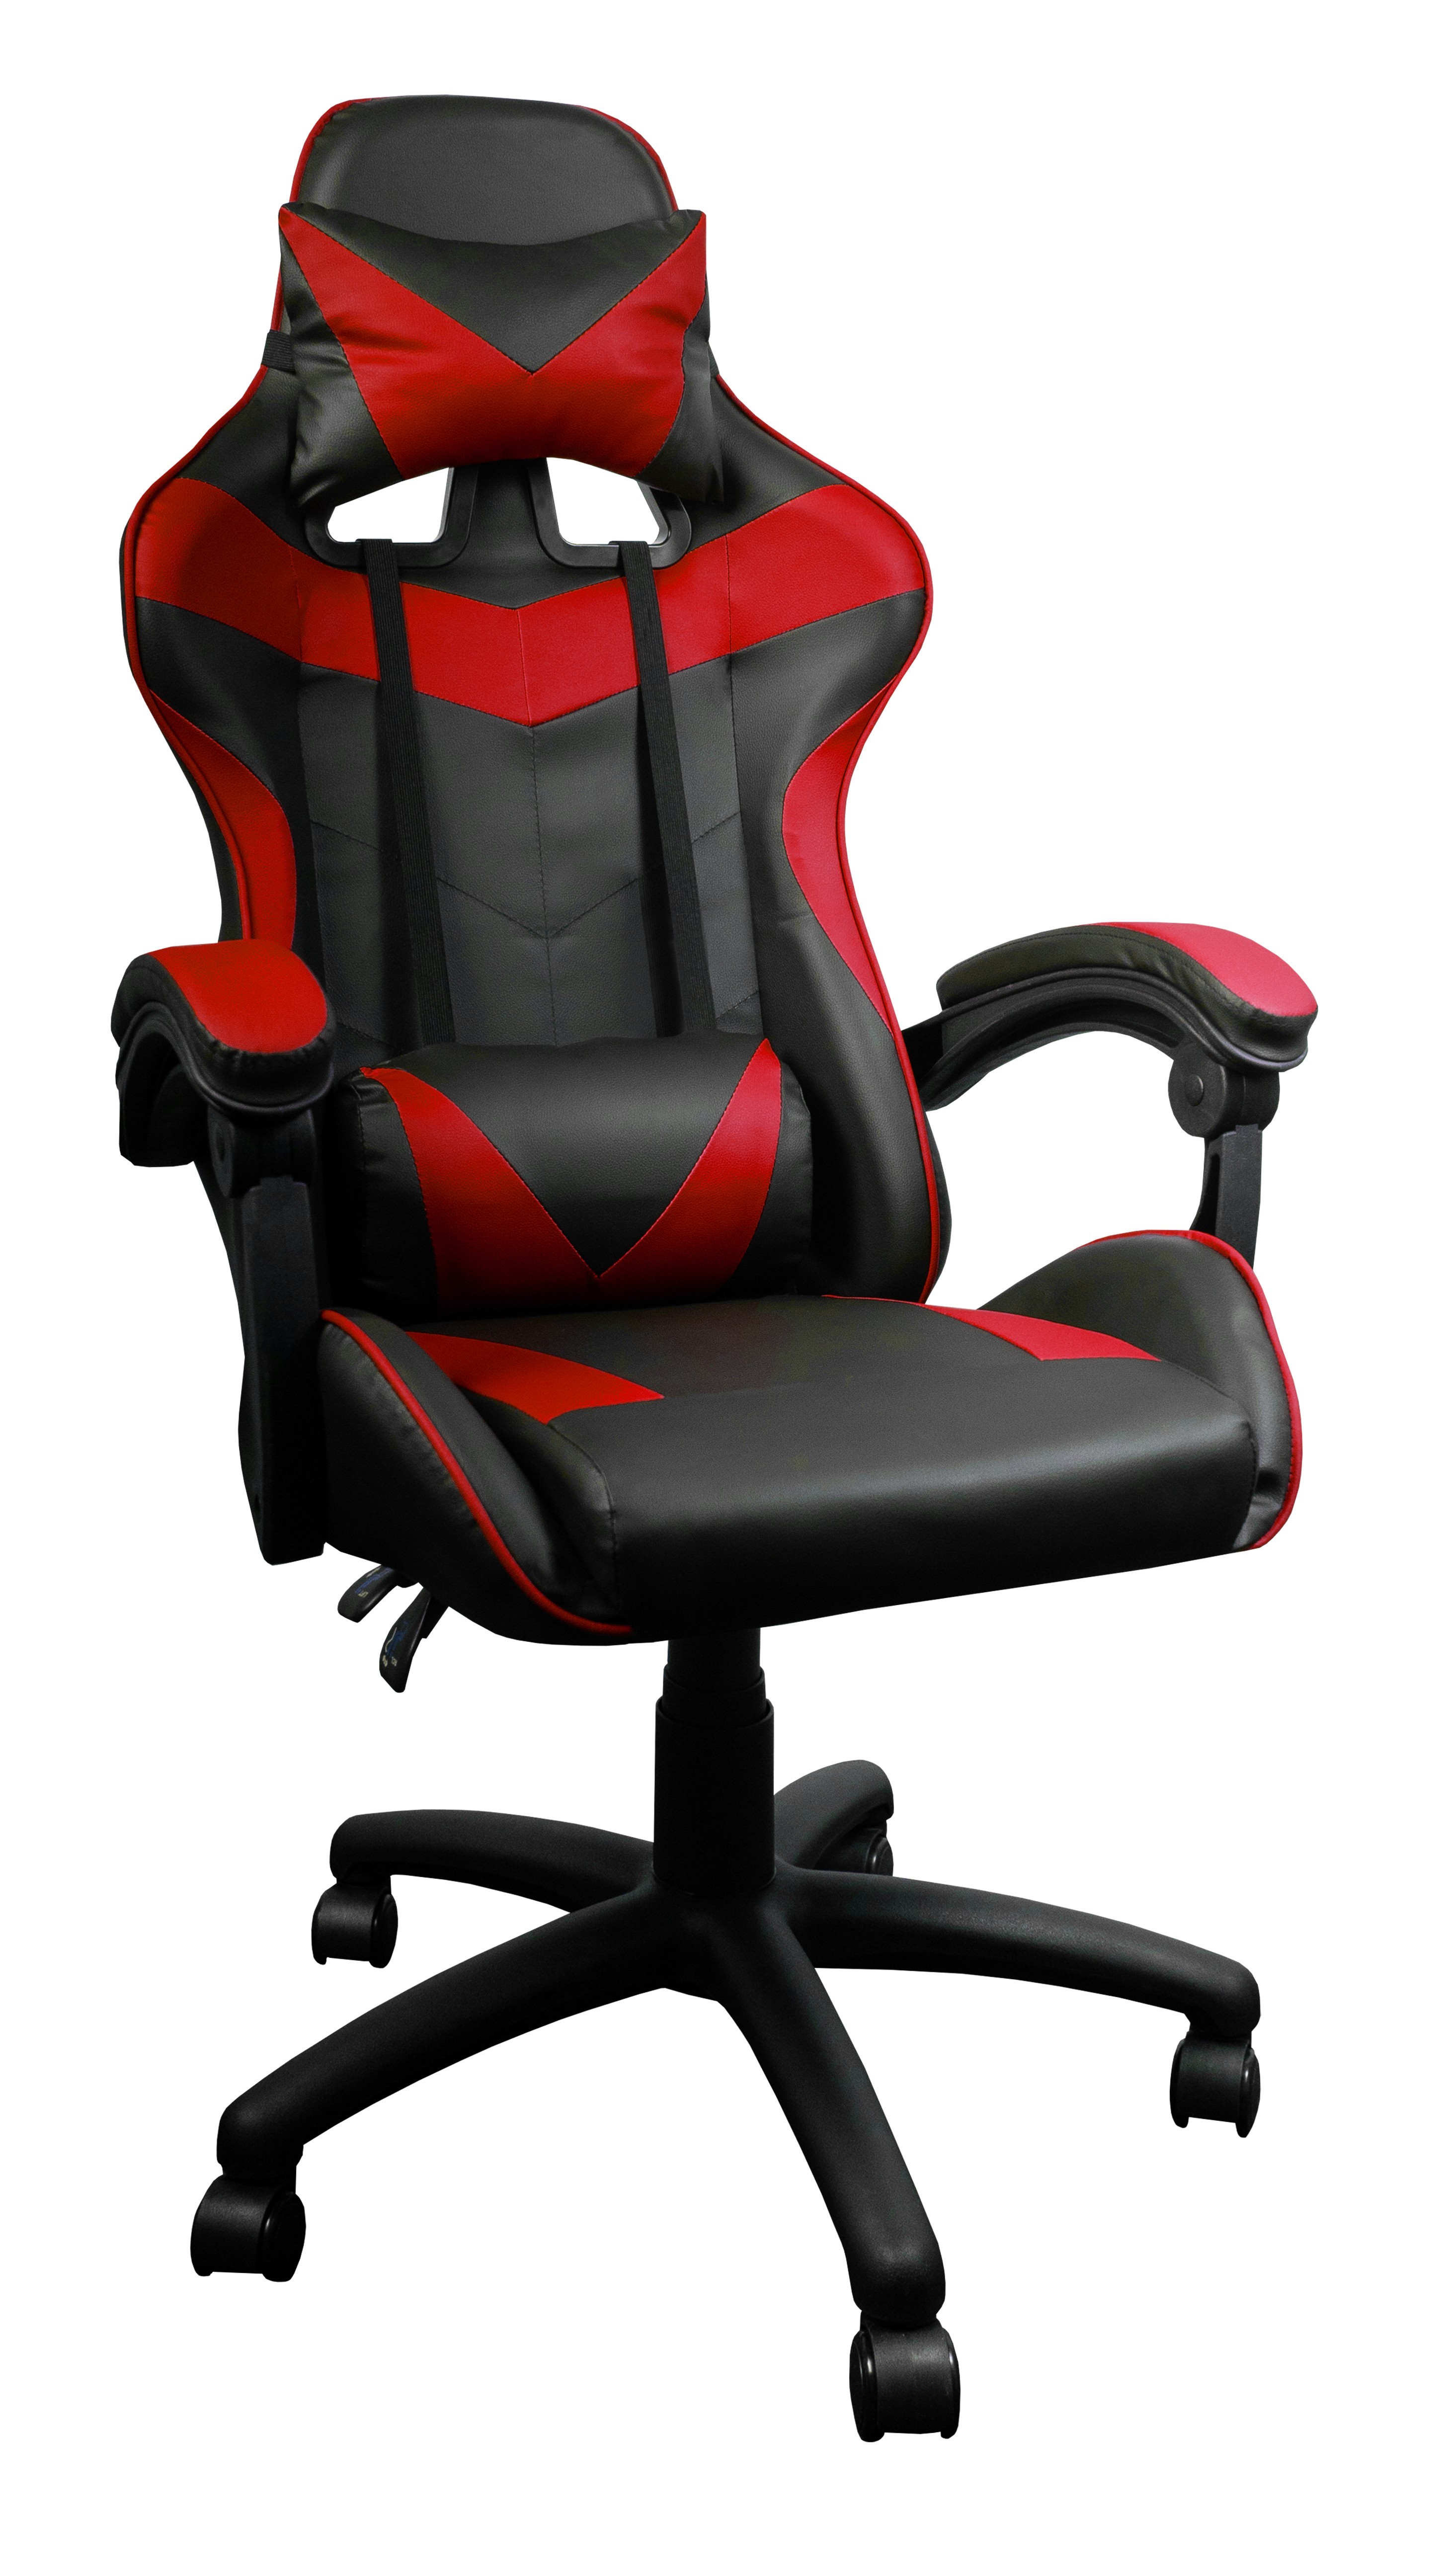 Aga Herní židle MR2080 Černo - Červená